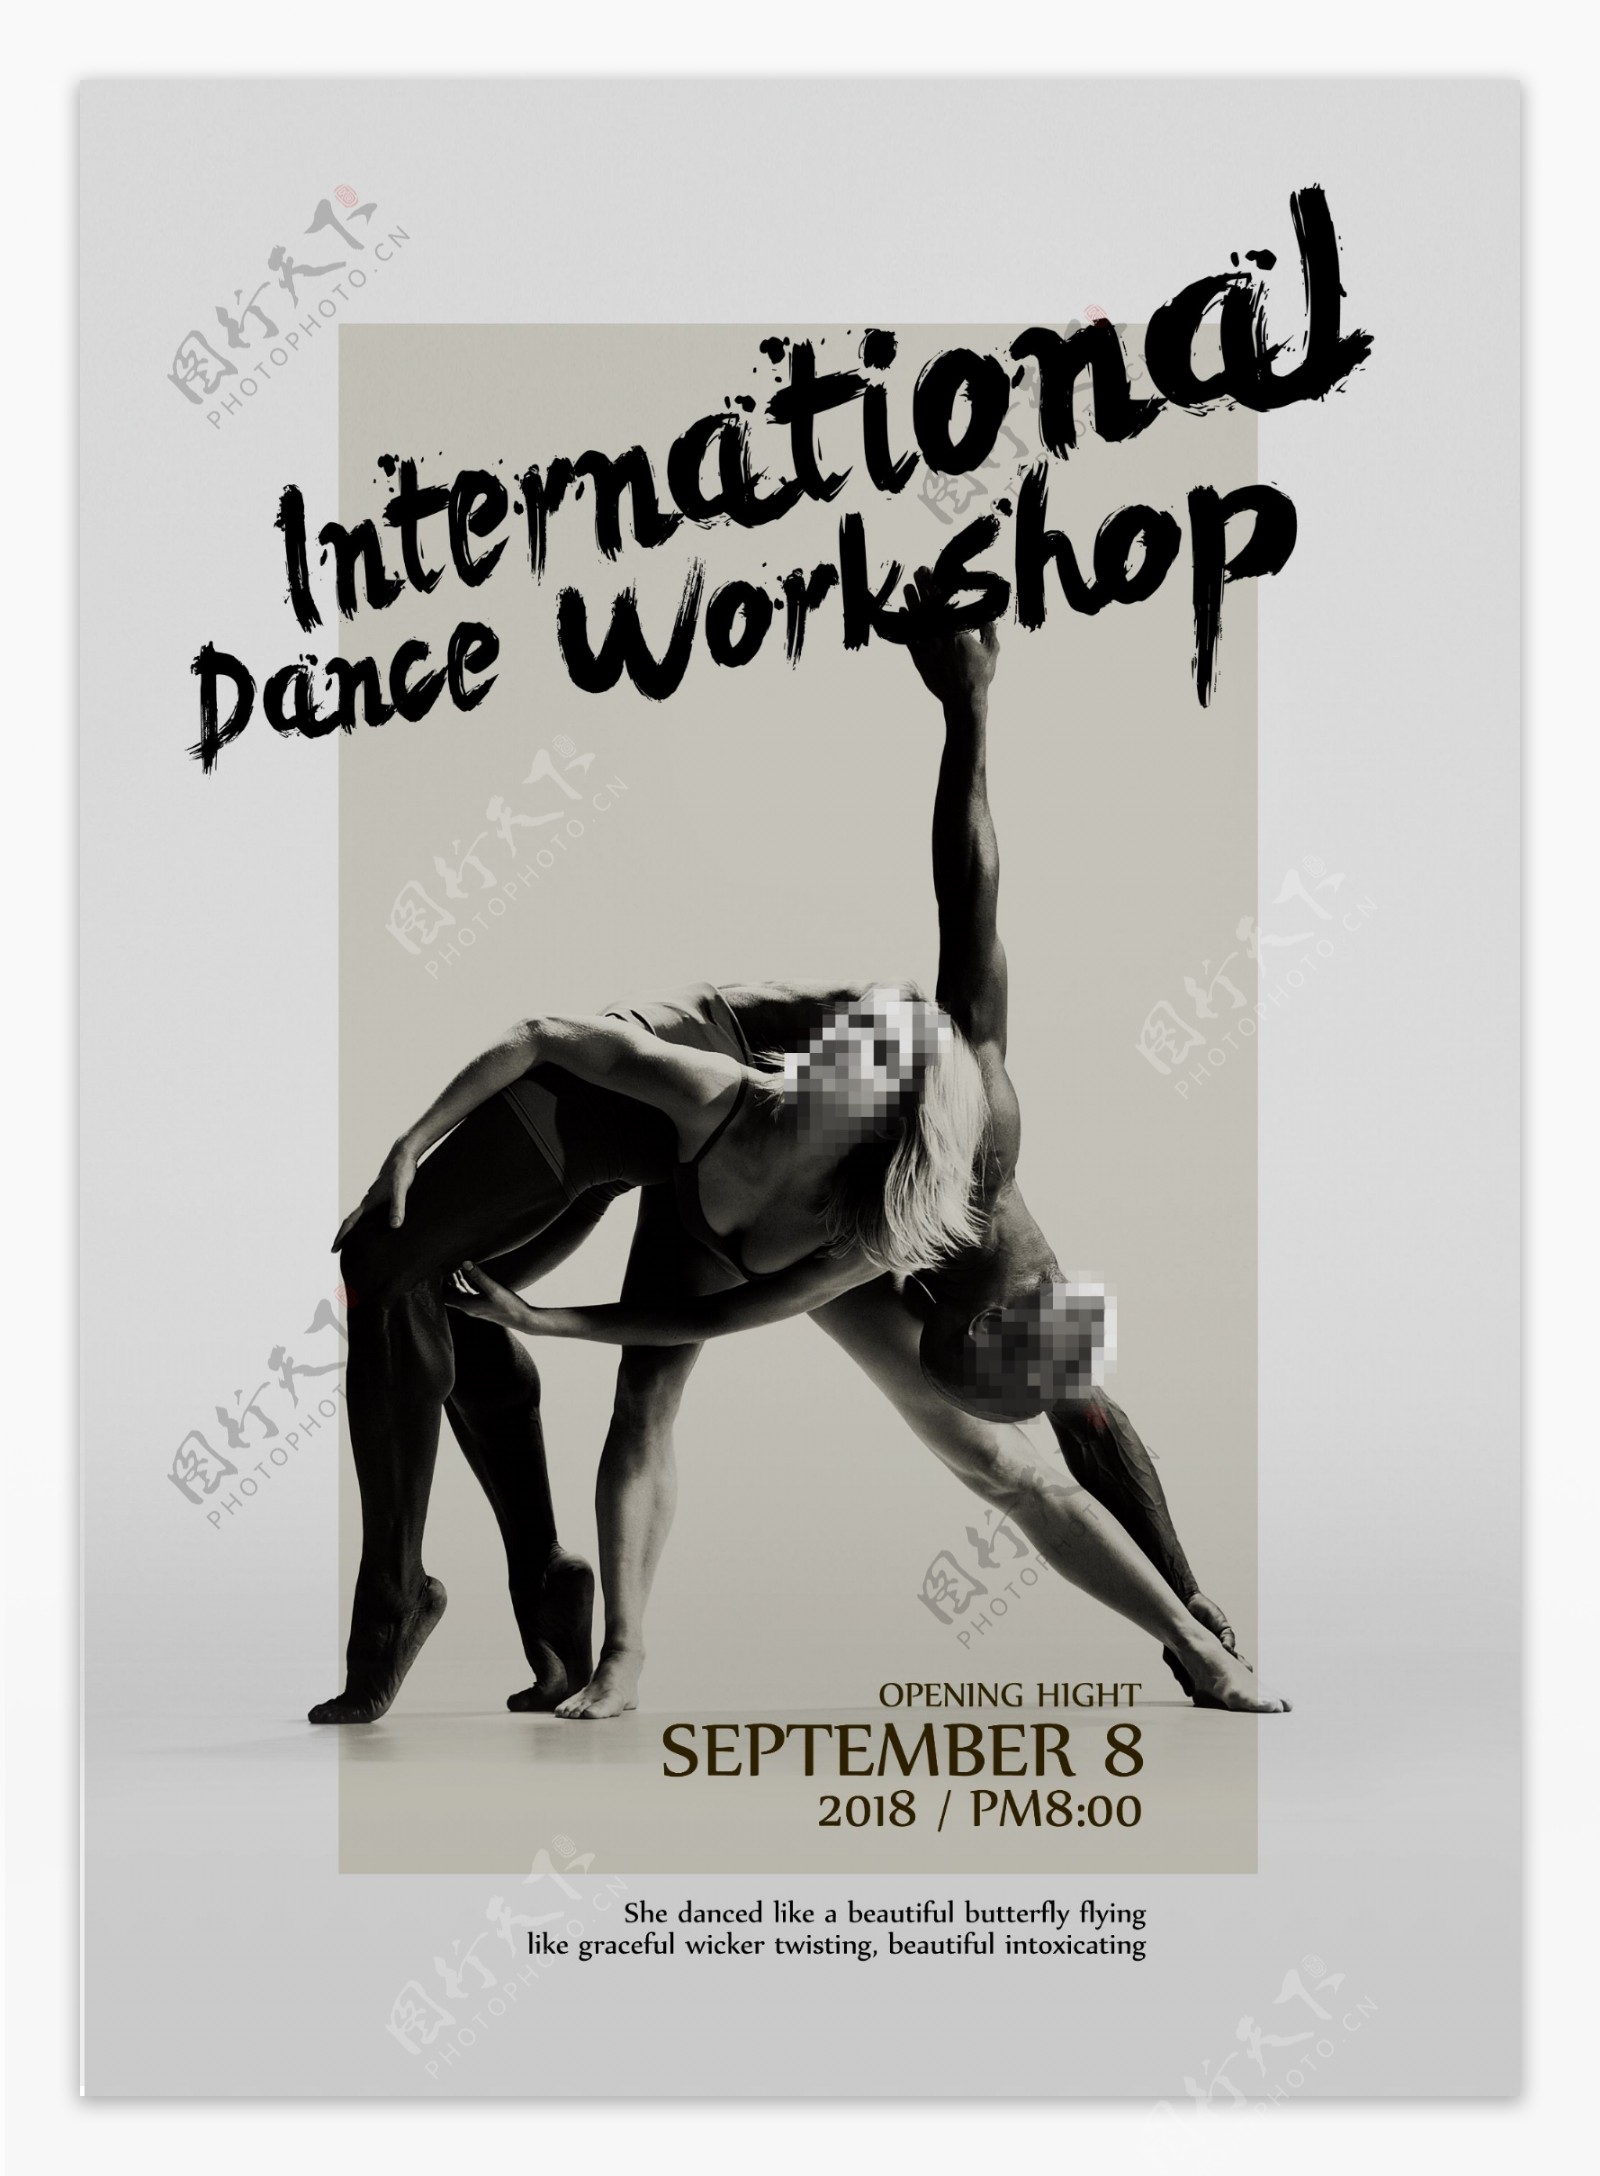 2018国际舞蹈工作坊海报